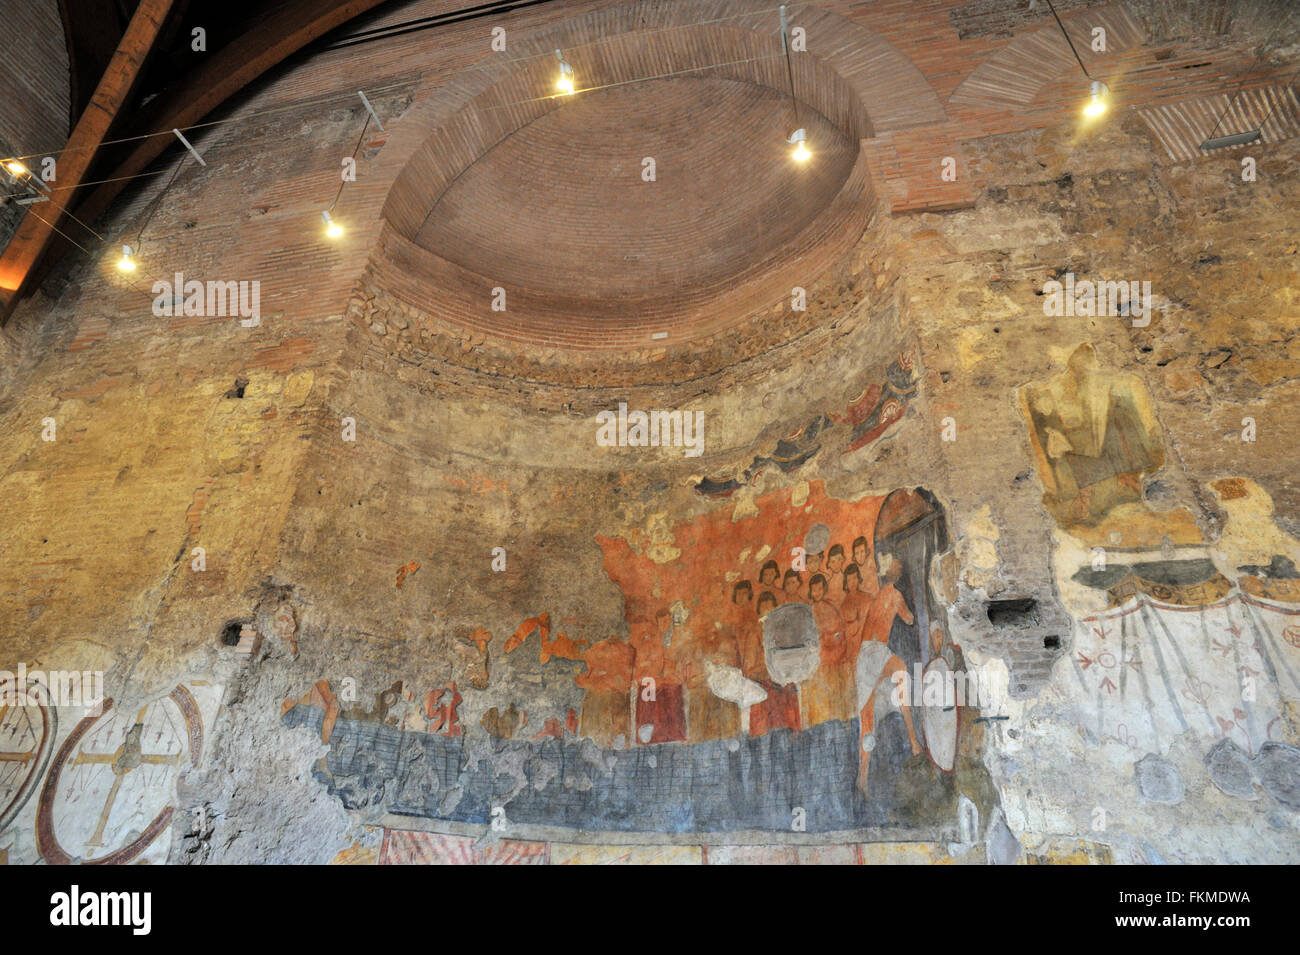 Fresque médiévale (VIIIe siècle après JC), Oratoire des quarante martyrs, hall d'entrée du Palais impérial, Forum romain, Rome, Italie Banque D'Images